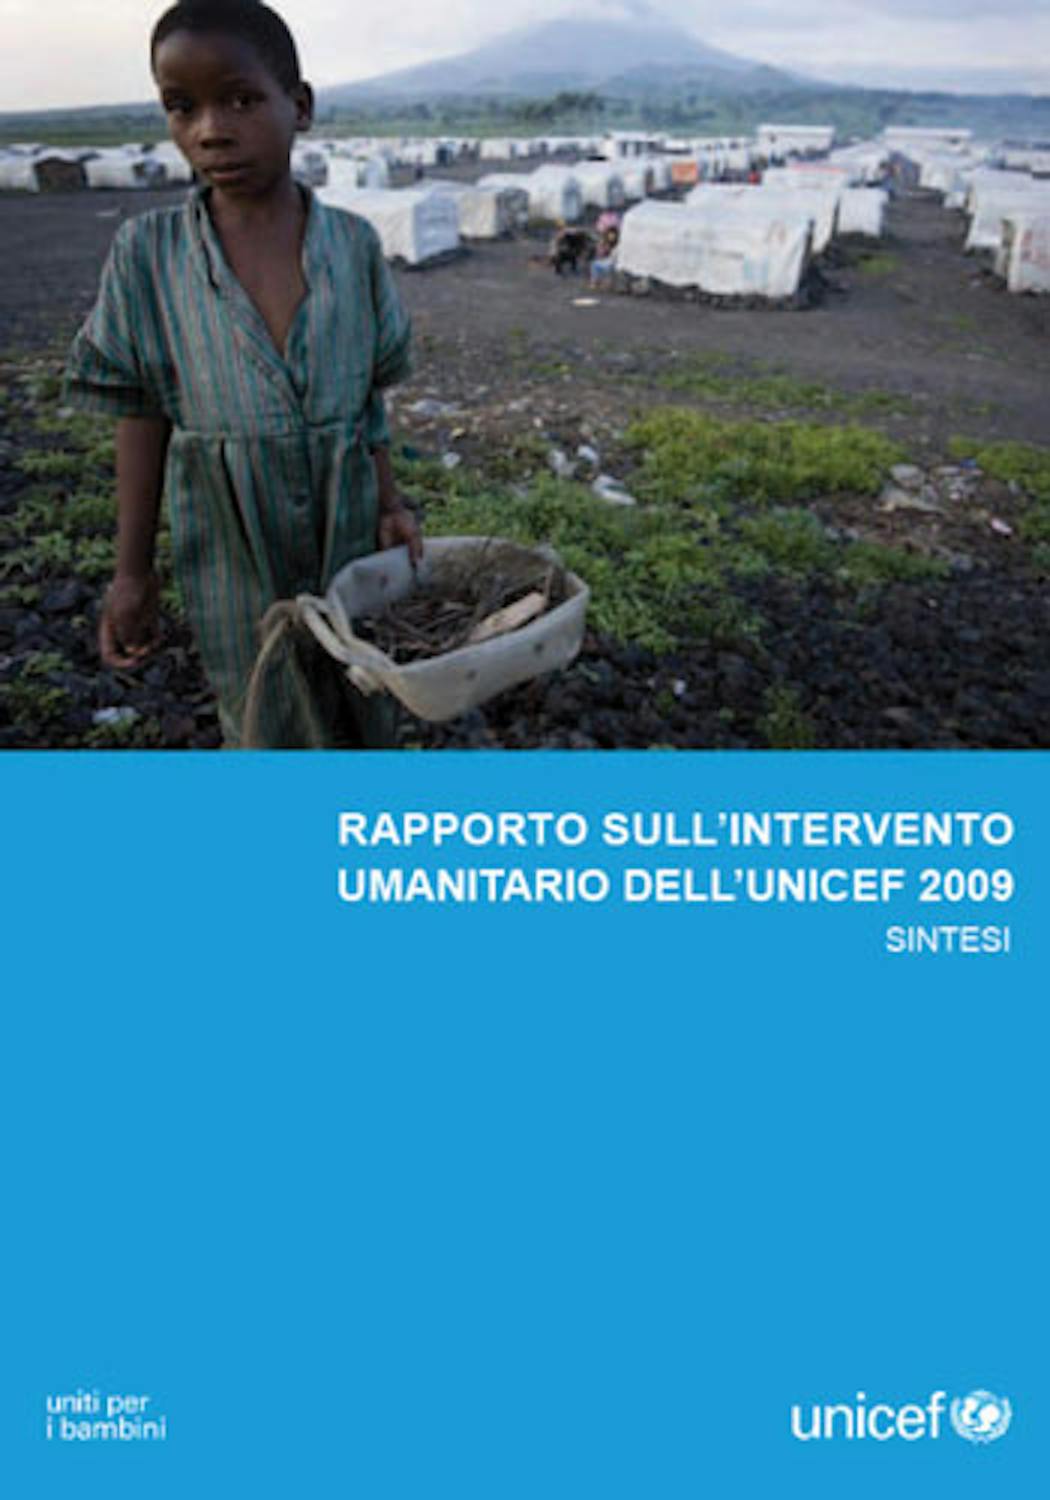 Rapporto sull'intervento umanitario 2009 dell'UNICEF